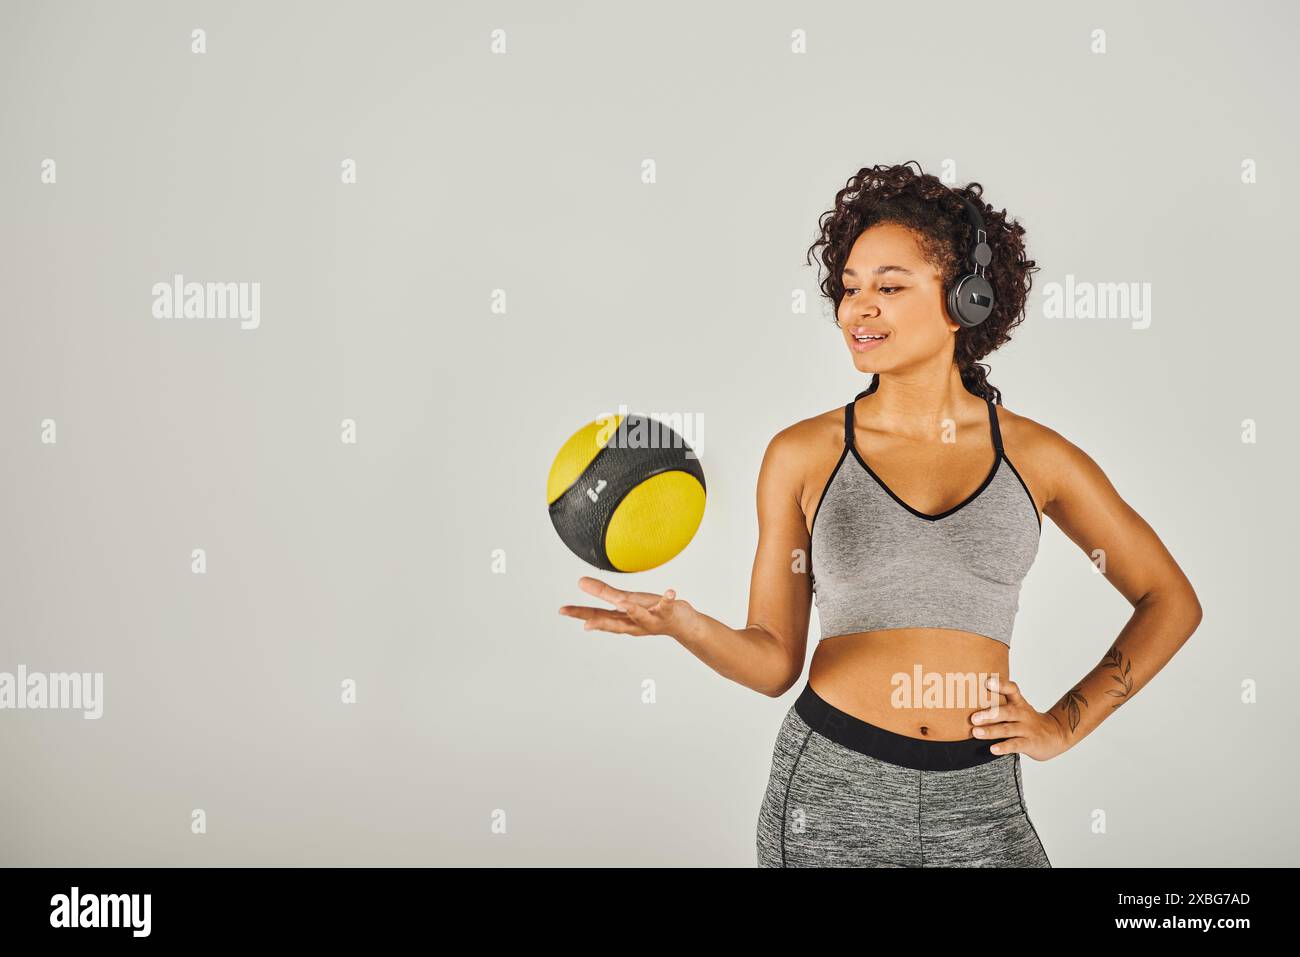 La sportiva riccia afroamericana in abbigliamento attivo mostra forza ed equilibrio mentre tiene in mano una palla gialla e nera vibrante. Foto Stock